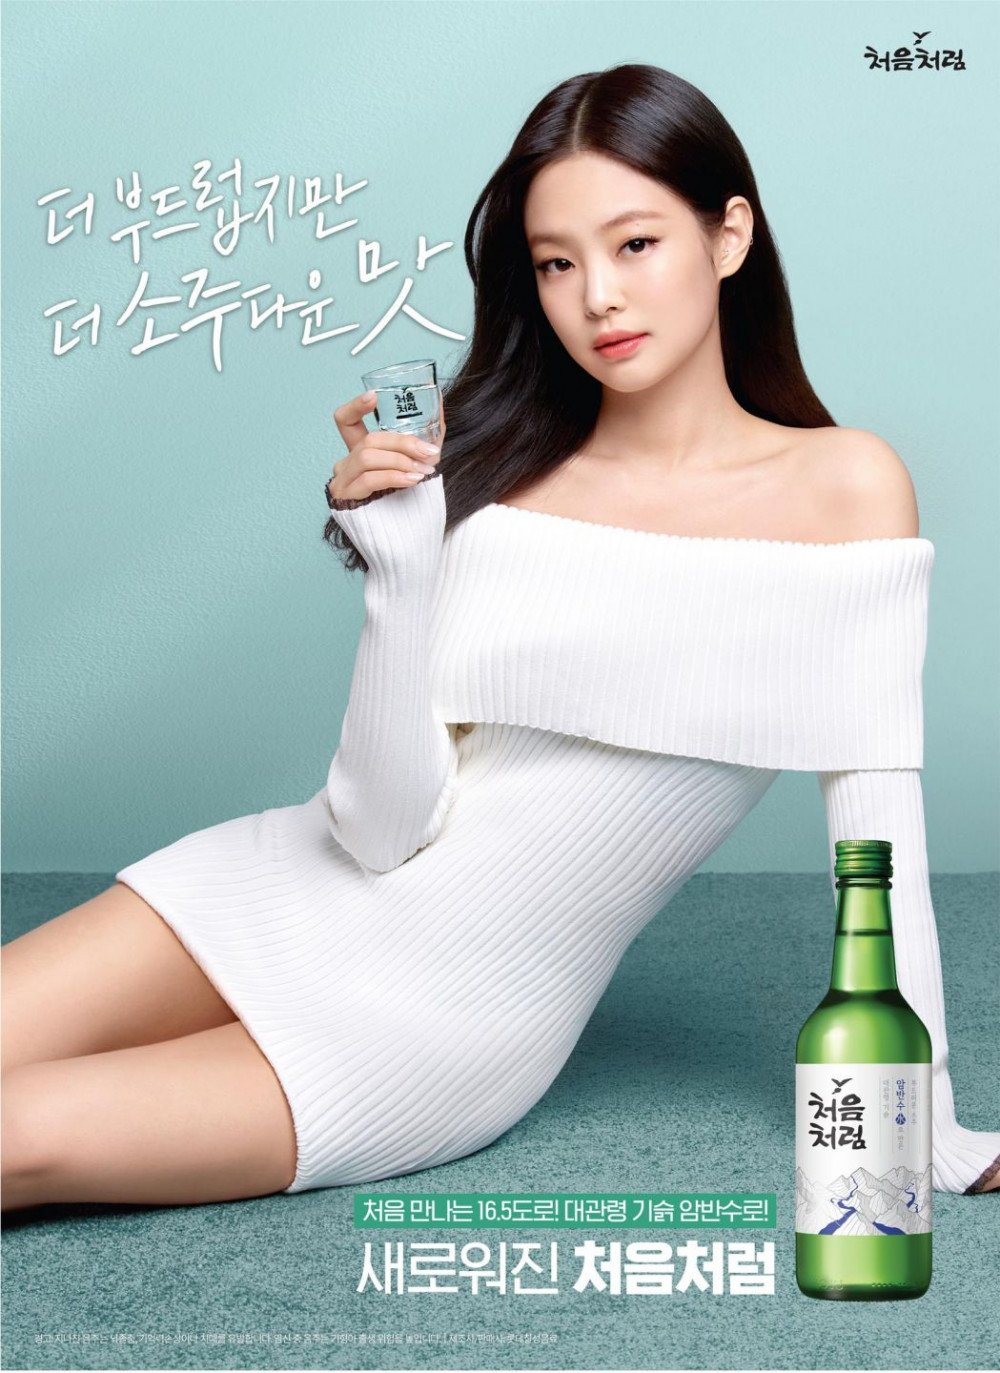 Бренд соджу Lotte «Chum Churum» выпустил первый промо-постер с их новой музой - Дженни из BLACKPINK